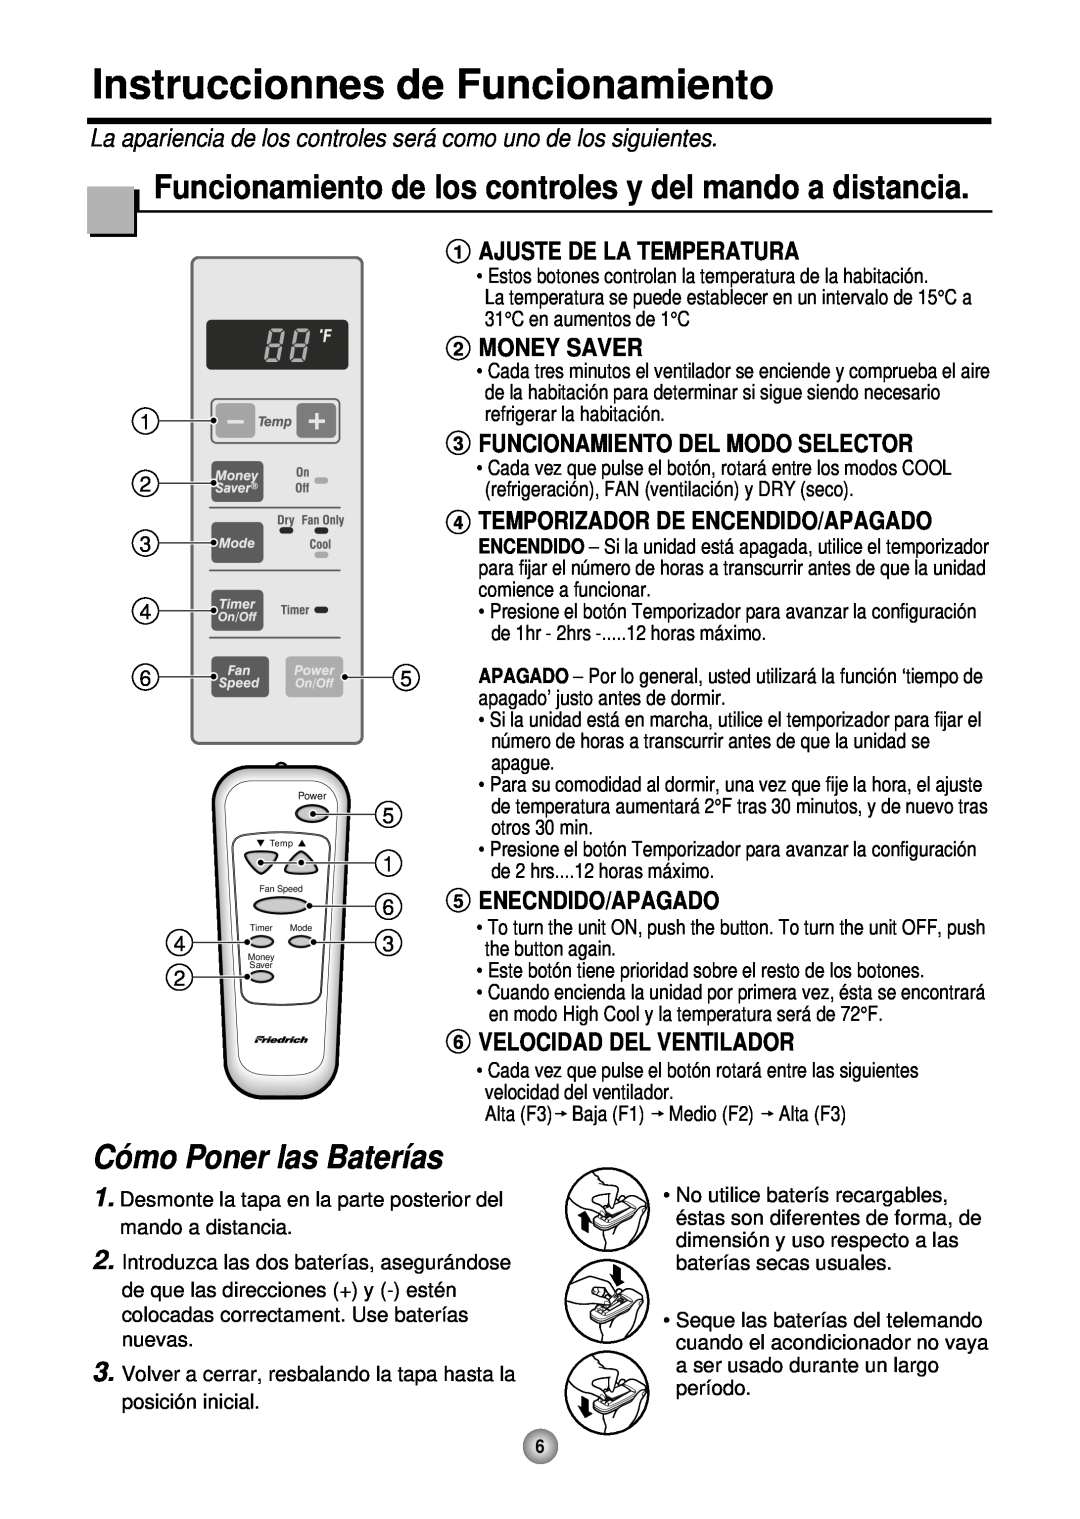 Friedrich CP05 CP Line Instruccionnes de Funcionamiento, Funcionamiento de los controles y del mando a distancia 